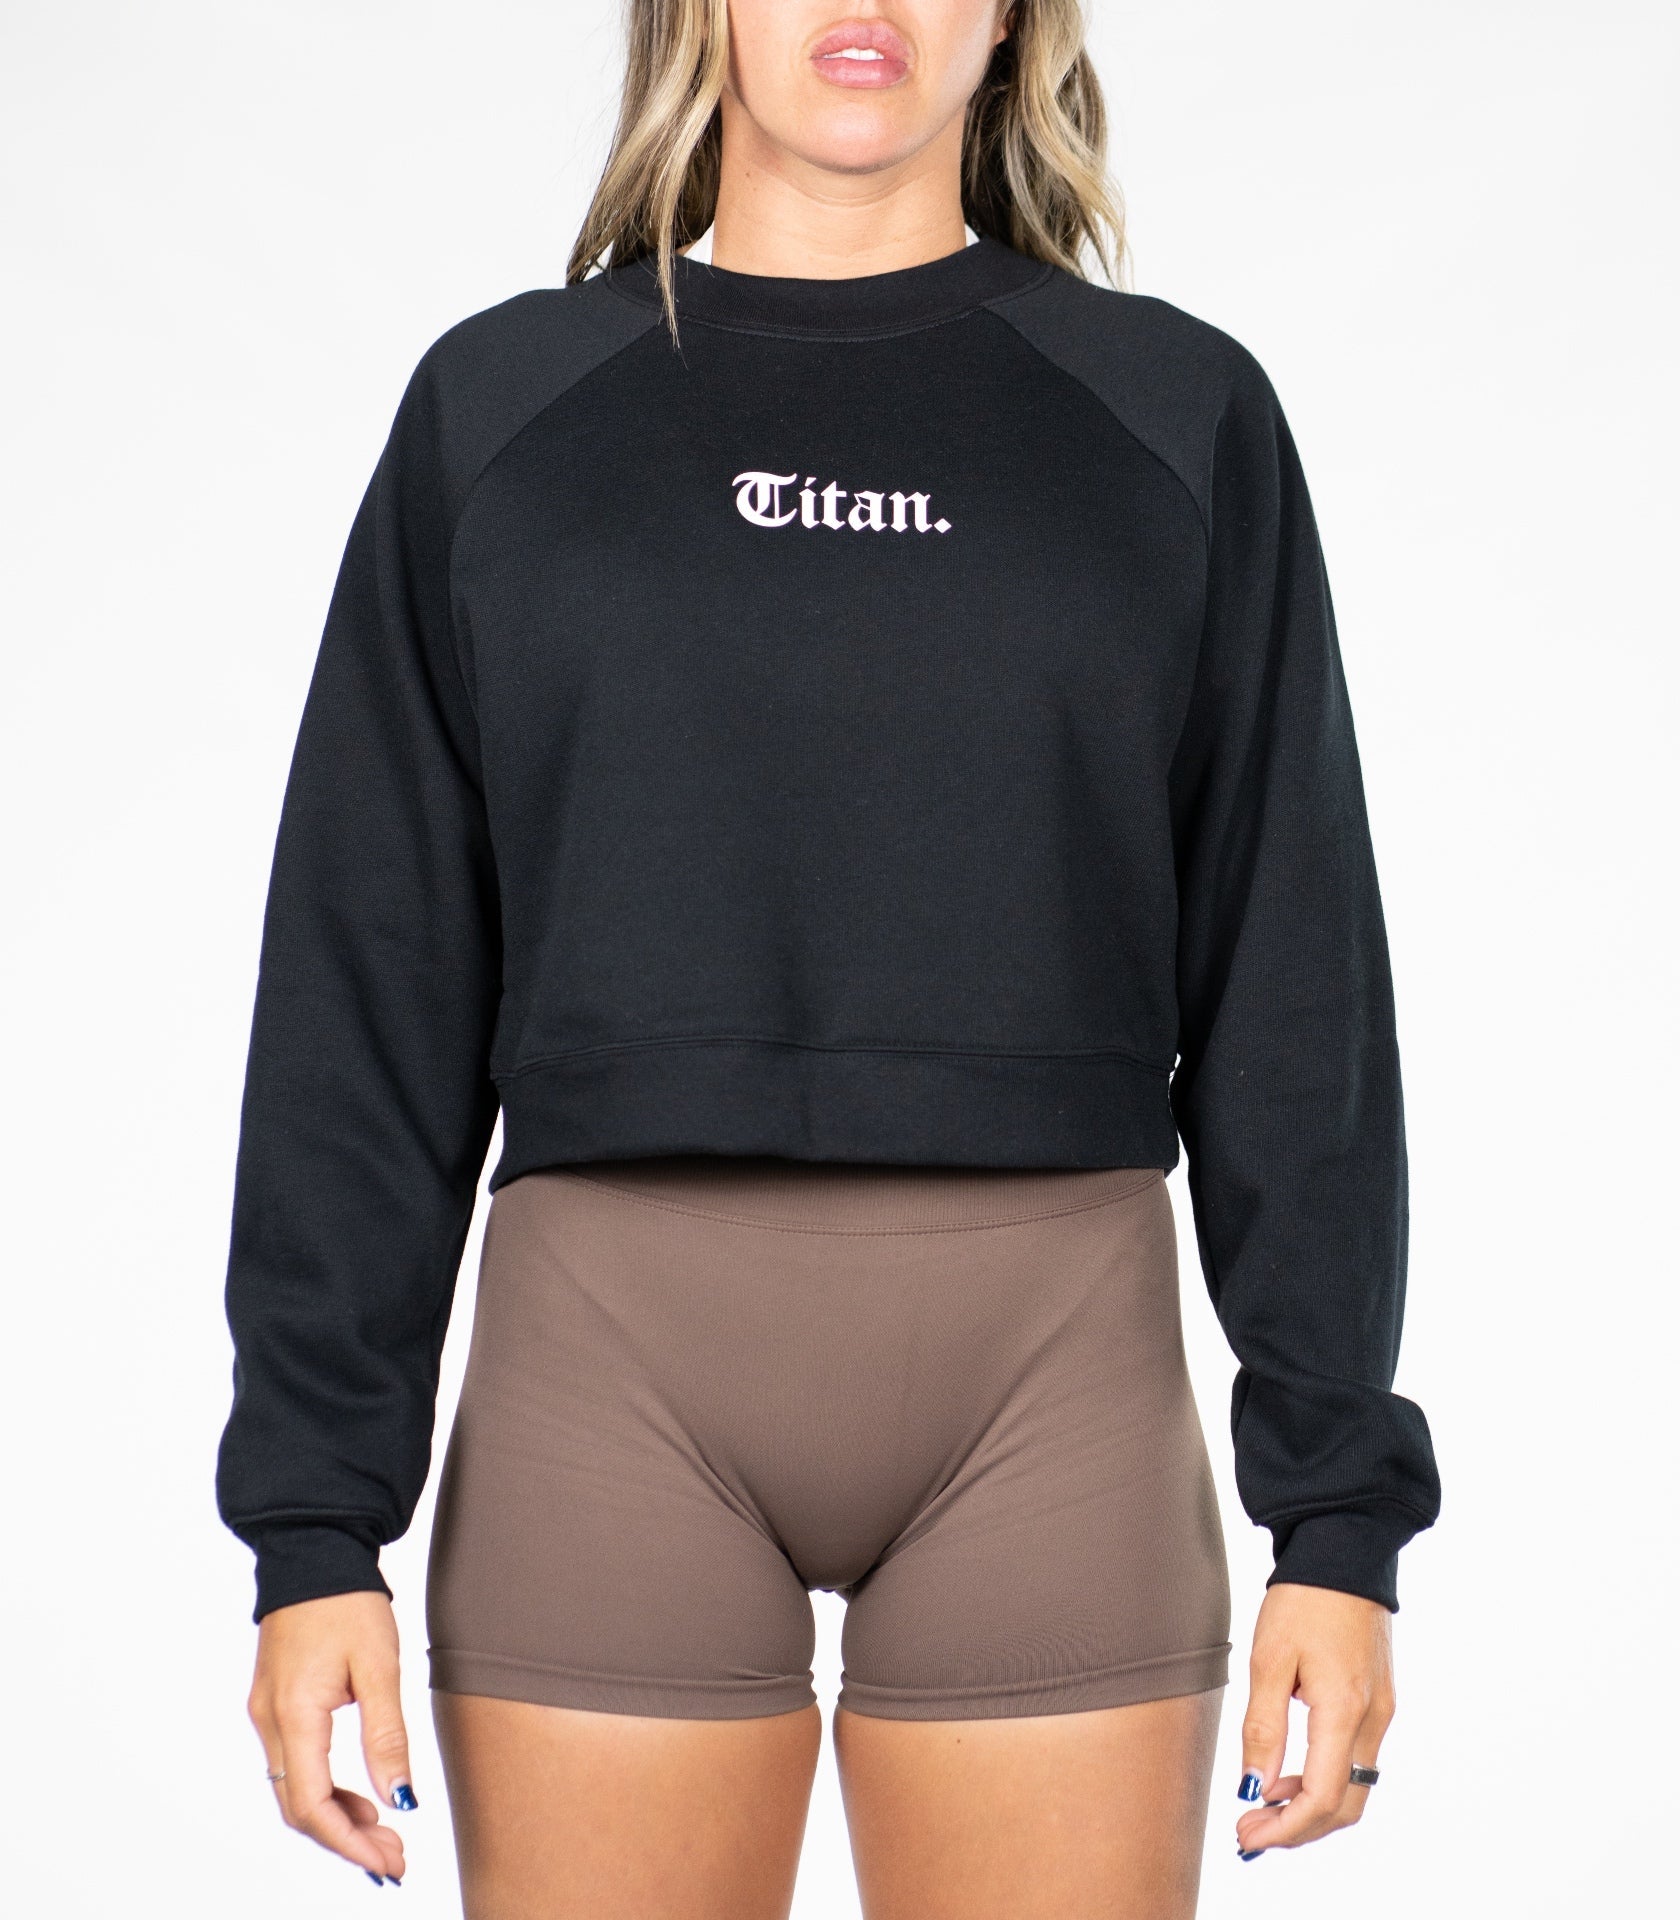 STATEMENT Cropped Sweatshirt - Titan